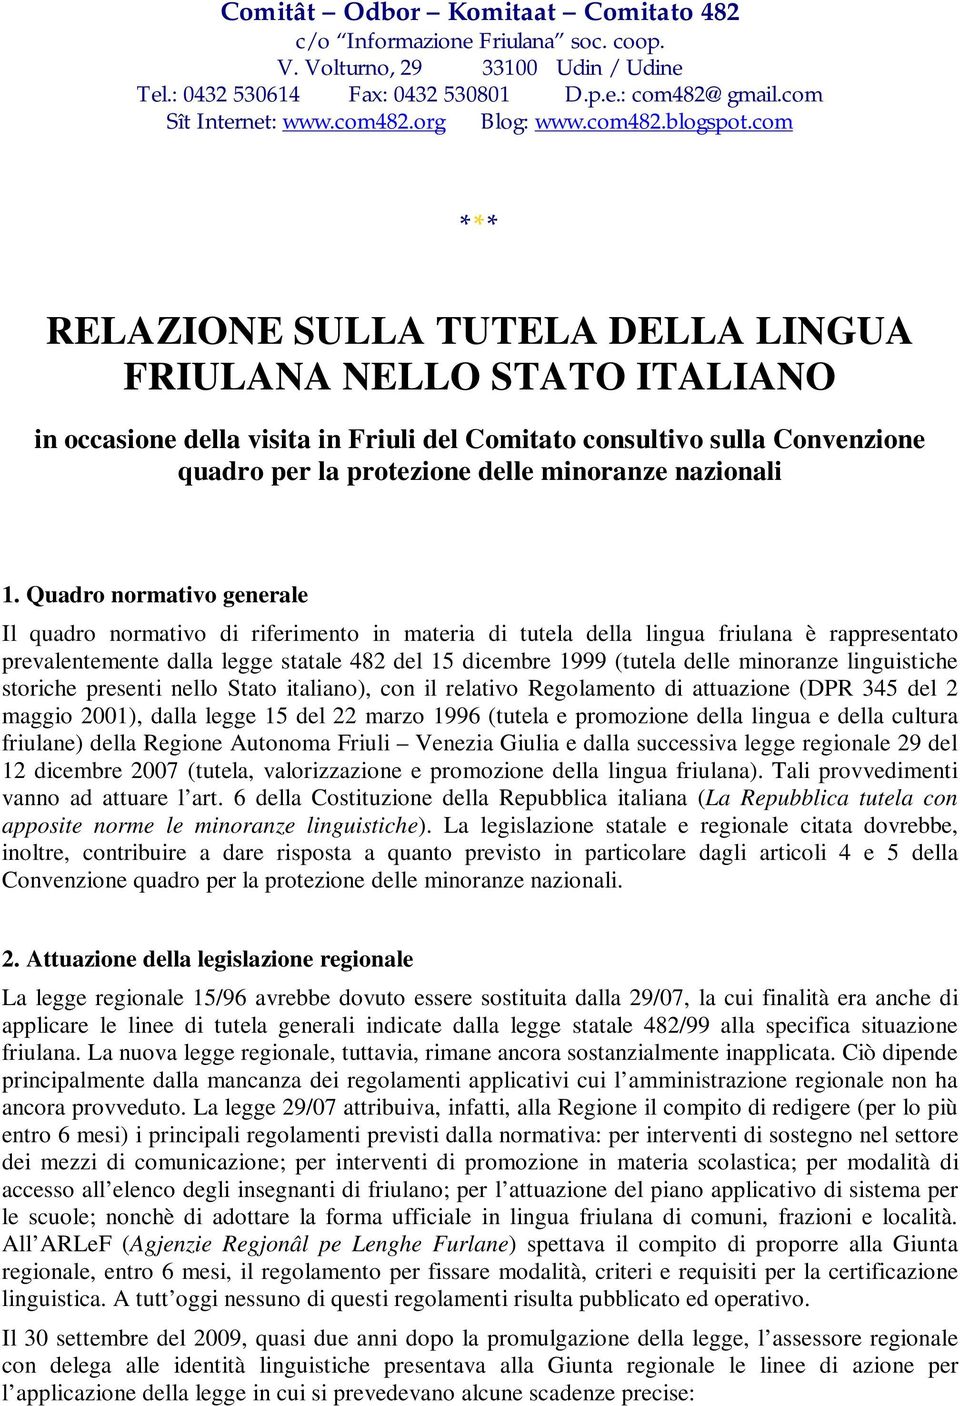 com *** RELAZIONE SULLA TUTELA DELLA LINGUA FRIULANA NELLO STATO ITALIANO in occasione della visita in Friuli del Comitato consultivo sulla Convenzione quadro per la protezione delle minoranze